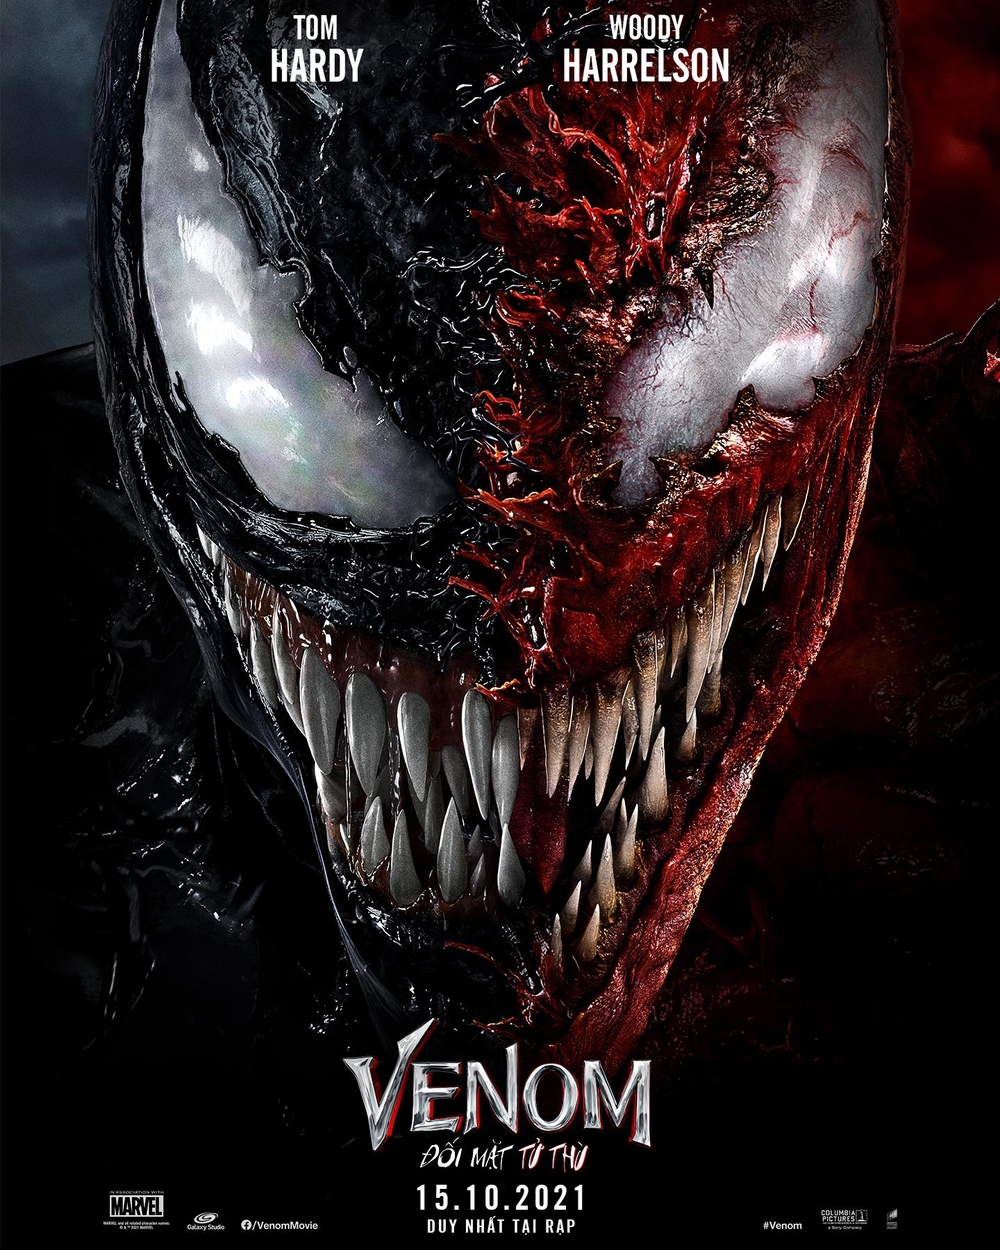 Hình nền Venom đỏ: Thử thách bản thân với Venom đỏ bao quanh khi sử dụng hình nền nổi bật này. Đây là một sự lựa chọn tuyệt vời cho những người yêu thích nhân vật này. Với màu đỏ chói lóa, hình nền sẽ làm cho màn hình của bạn trở nên sống động hơn bao giờ hết. Đừng bỏ lỡ cơ hội để tạo ra một không gian làm việc hoặc giải trí thú vị với hình nền Venom đỏ này.